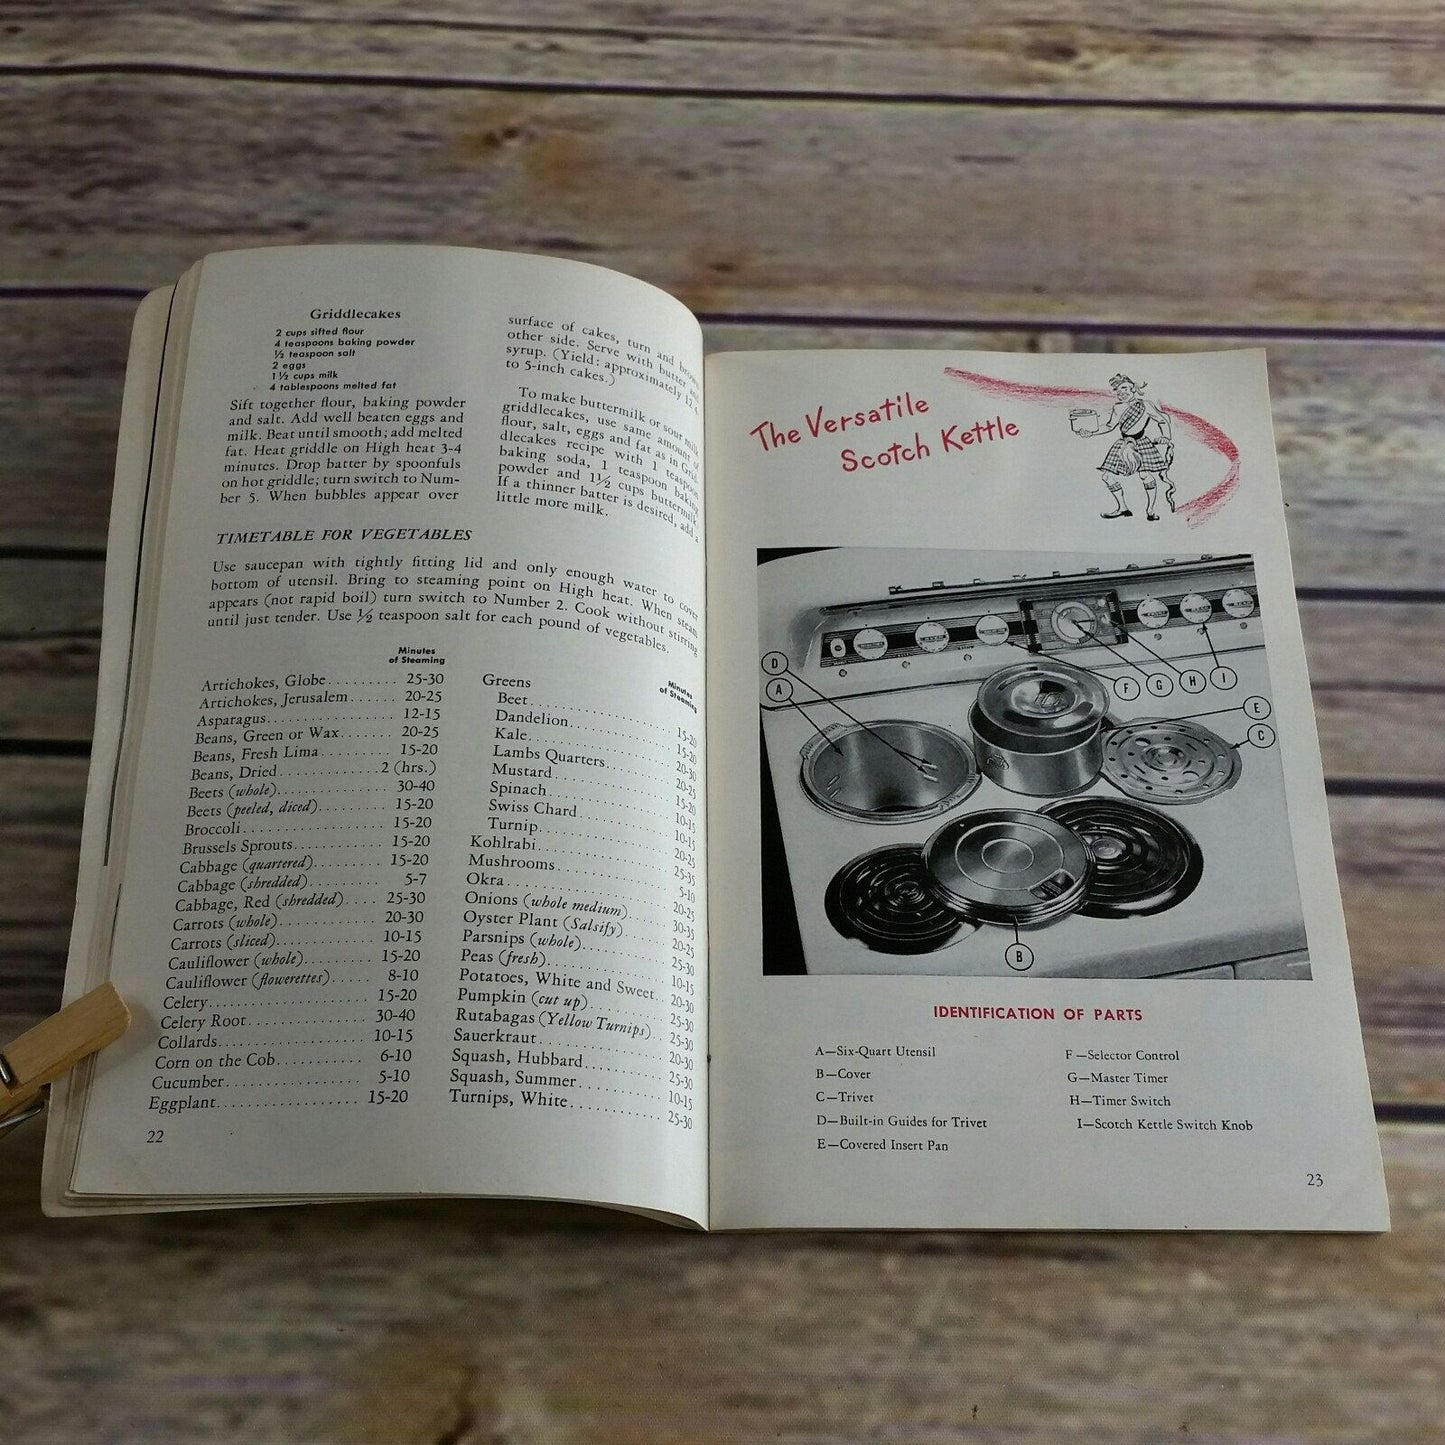 Vintage Cookbook Kelvinator Electric Range Recipes Care Use Manual Booklet 1940s Paperback Booklet Detroit Michigan